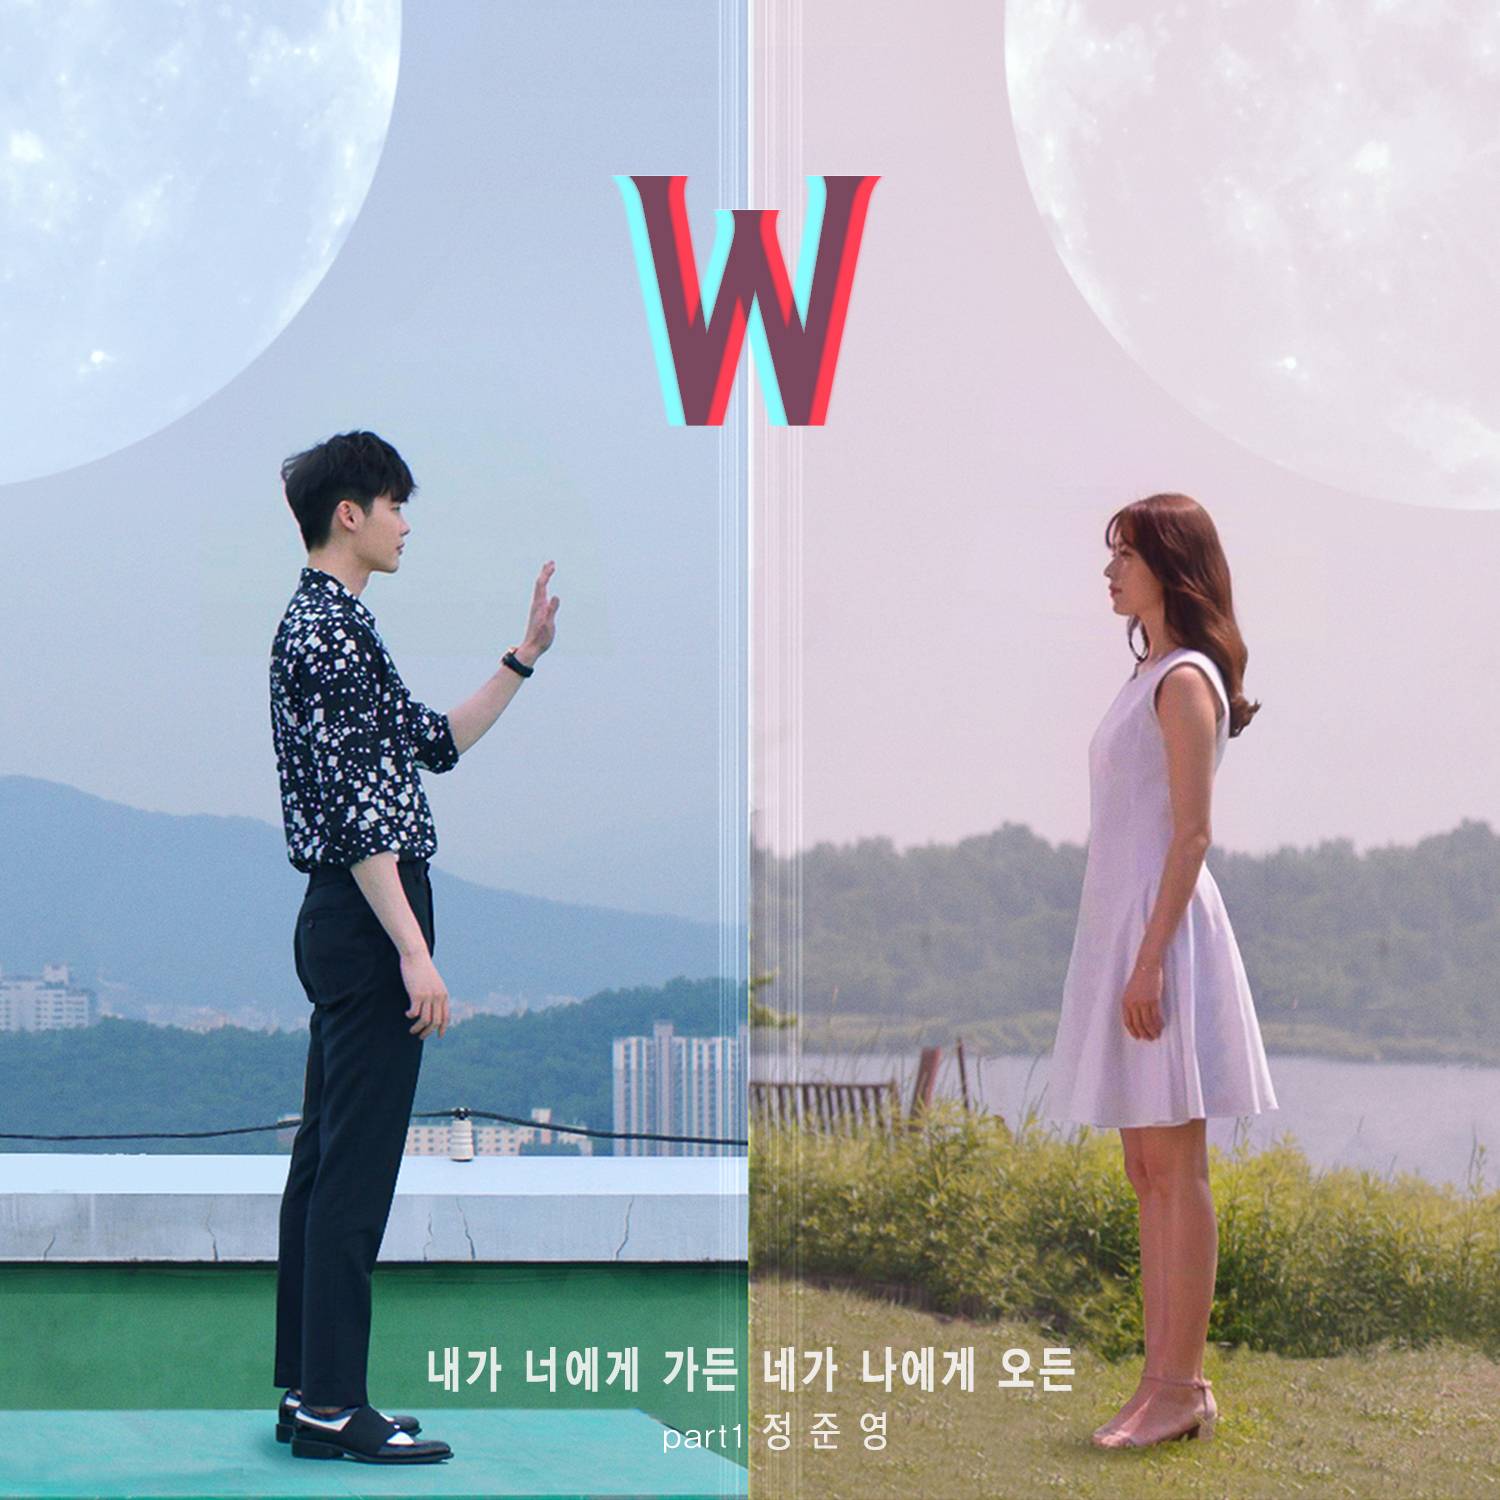 [미리듣기] 정준영 - W (MBC 수목드라마) OST - Part.1 | 인스티즈